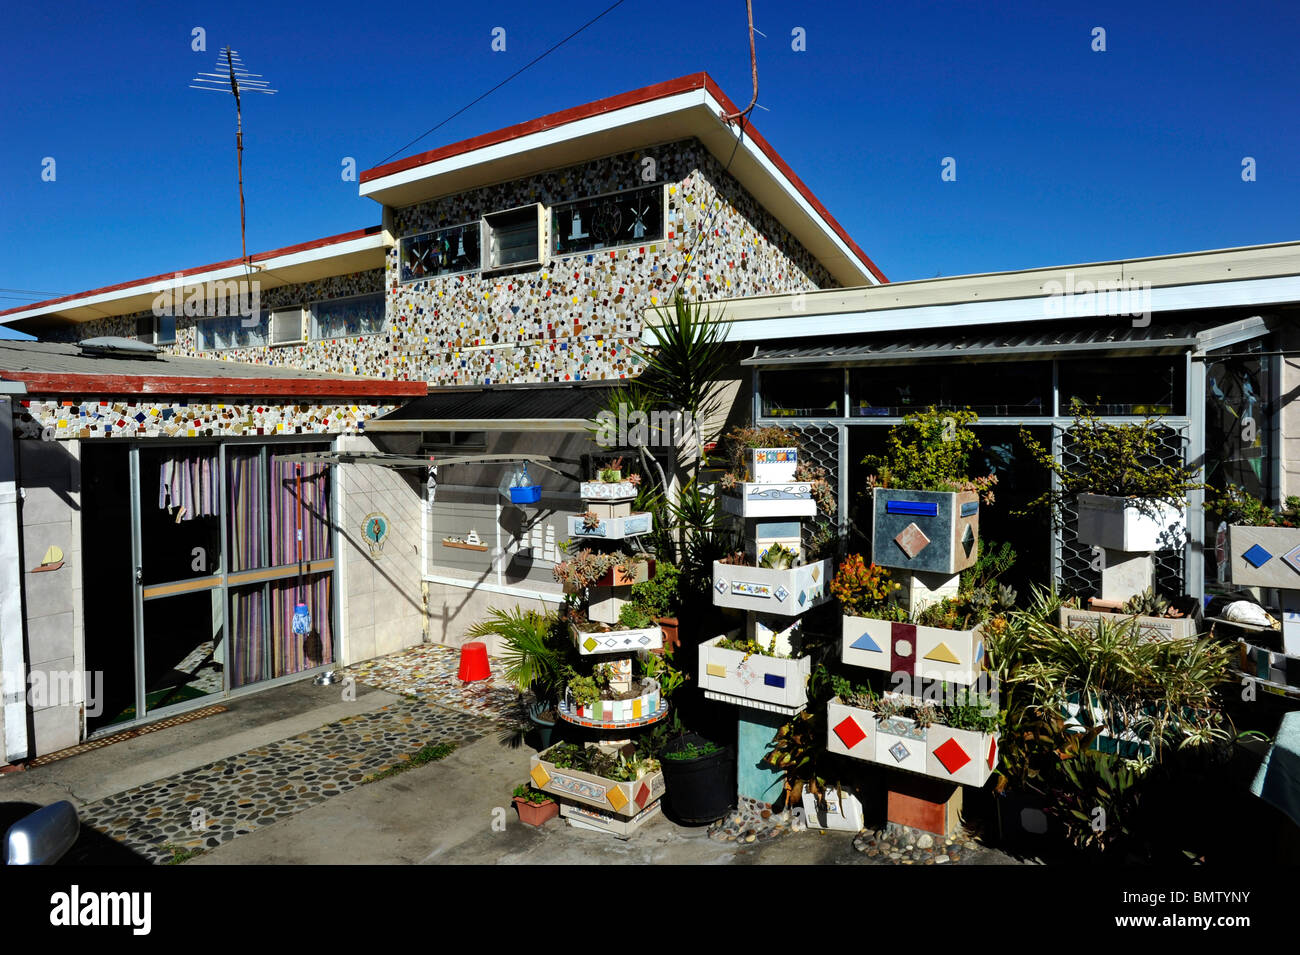 Une maison décorée avec des carreaux de céramique à Ballina sur la côte nord du NSW Australie Banque D'Images